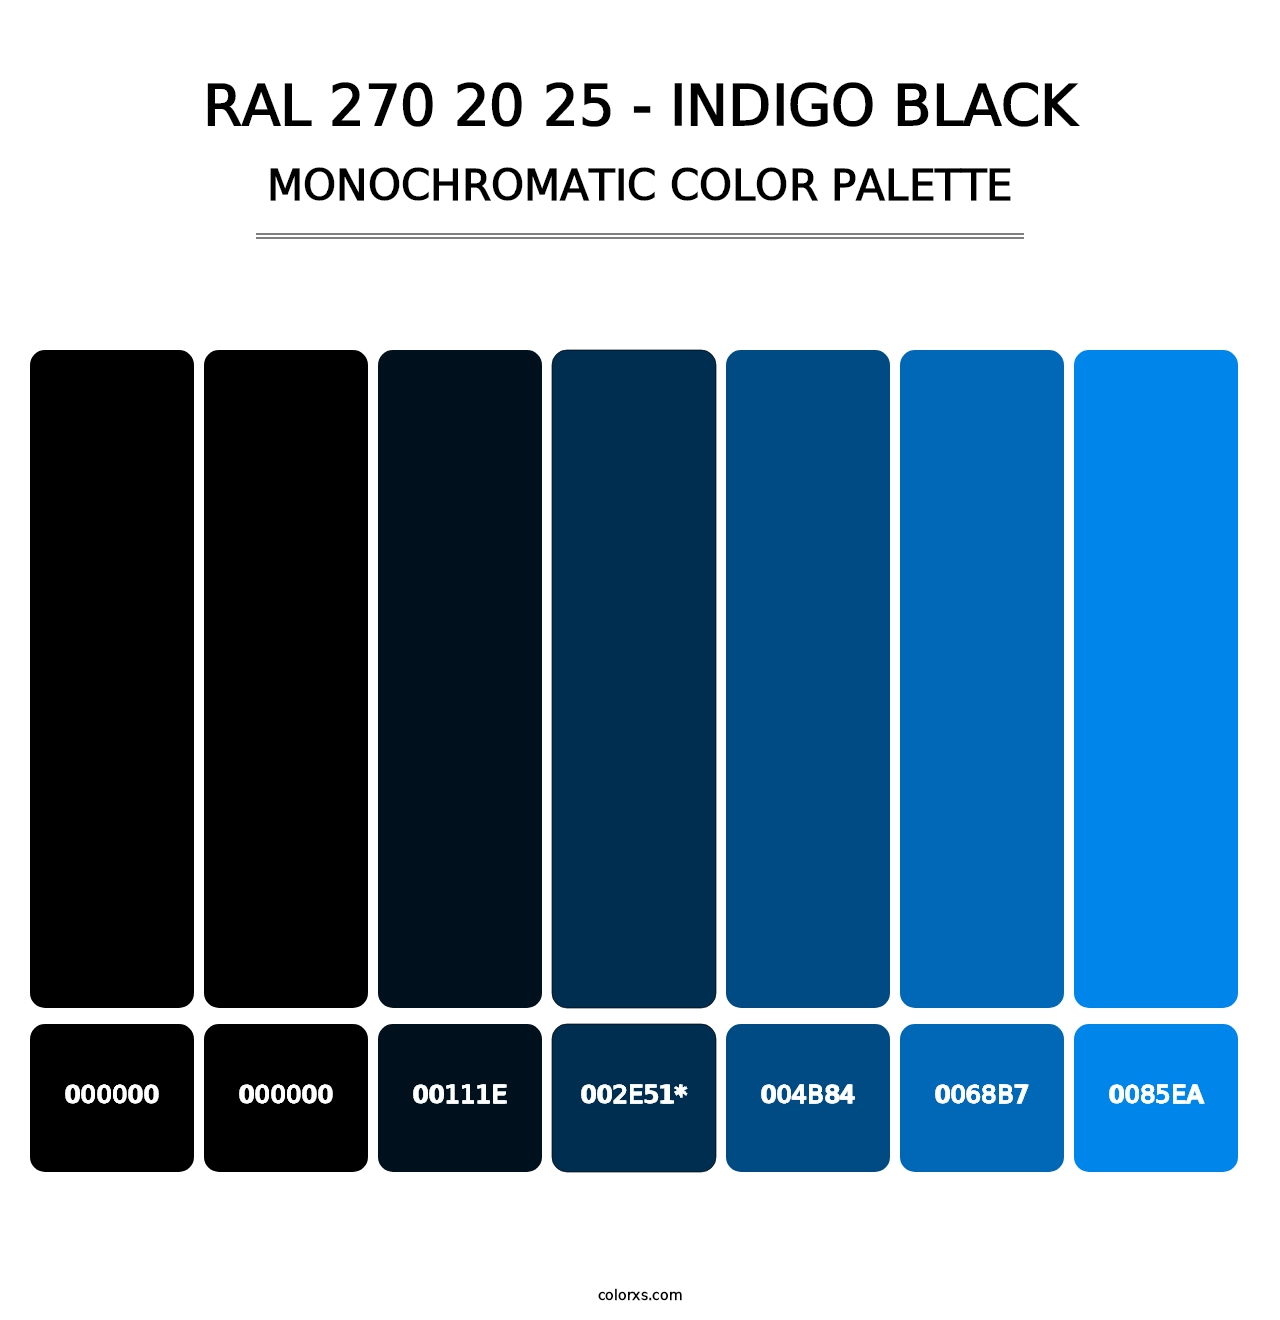 RAL 270 20 25 - Indigo Black - Monochromatic Color Palette